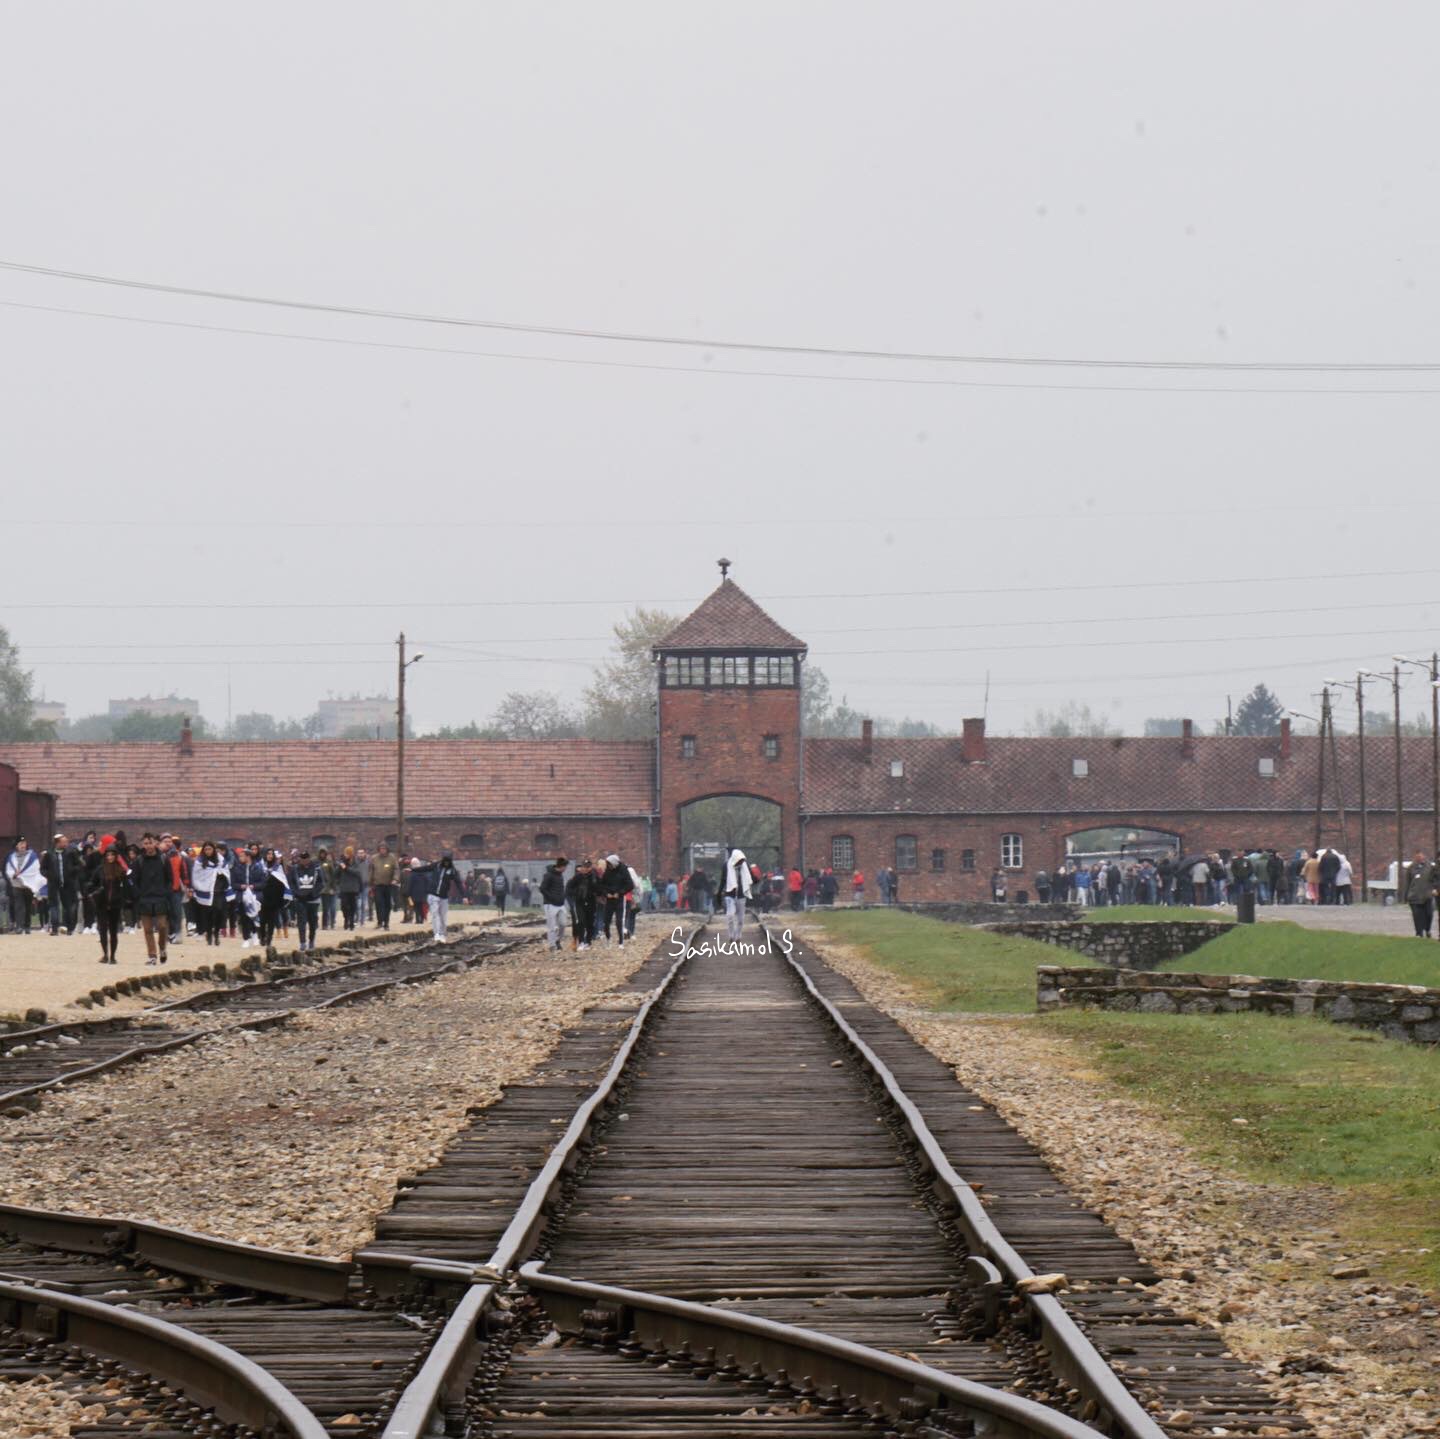 ทางเข้าที่โด่งดังของ Auschwitz II อันนี้ถ่ายจากด้านในตัวค่ายค่ะ